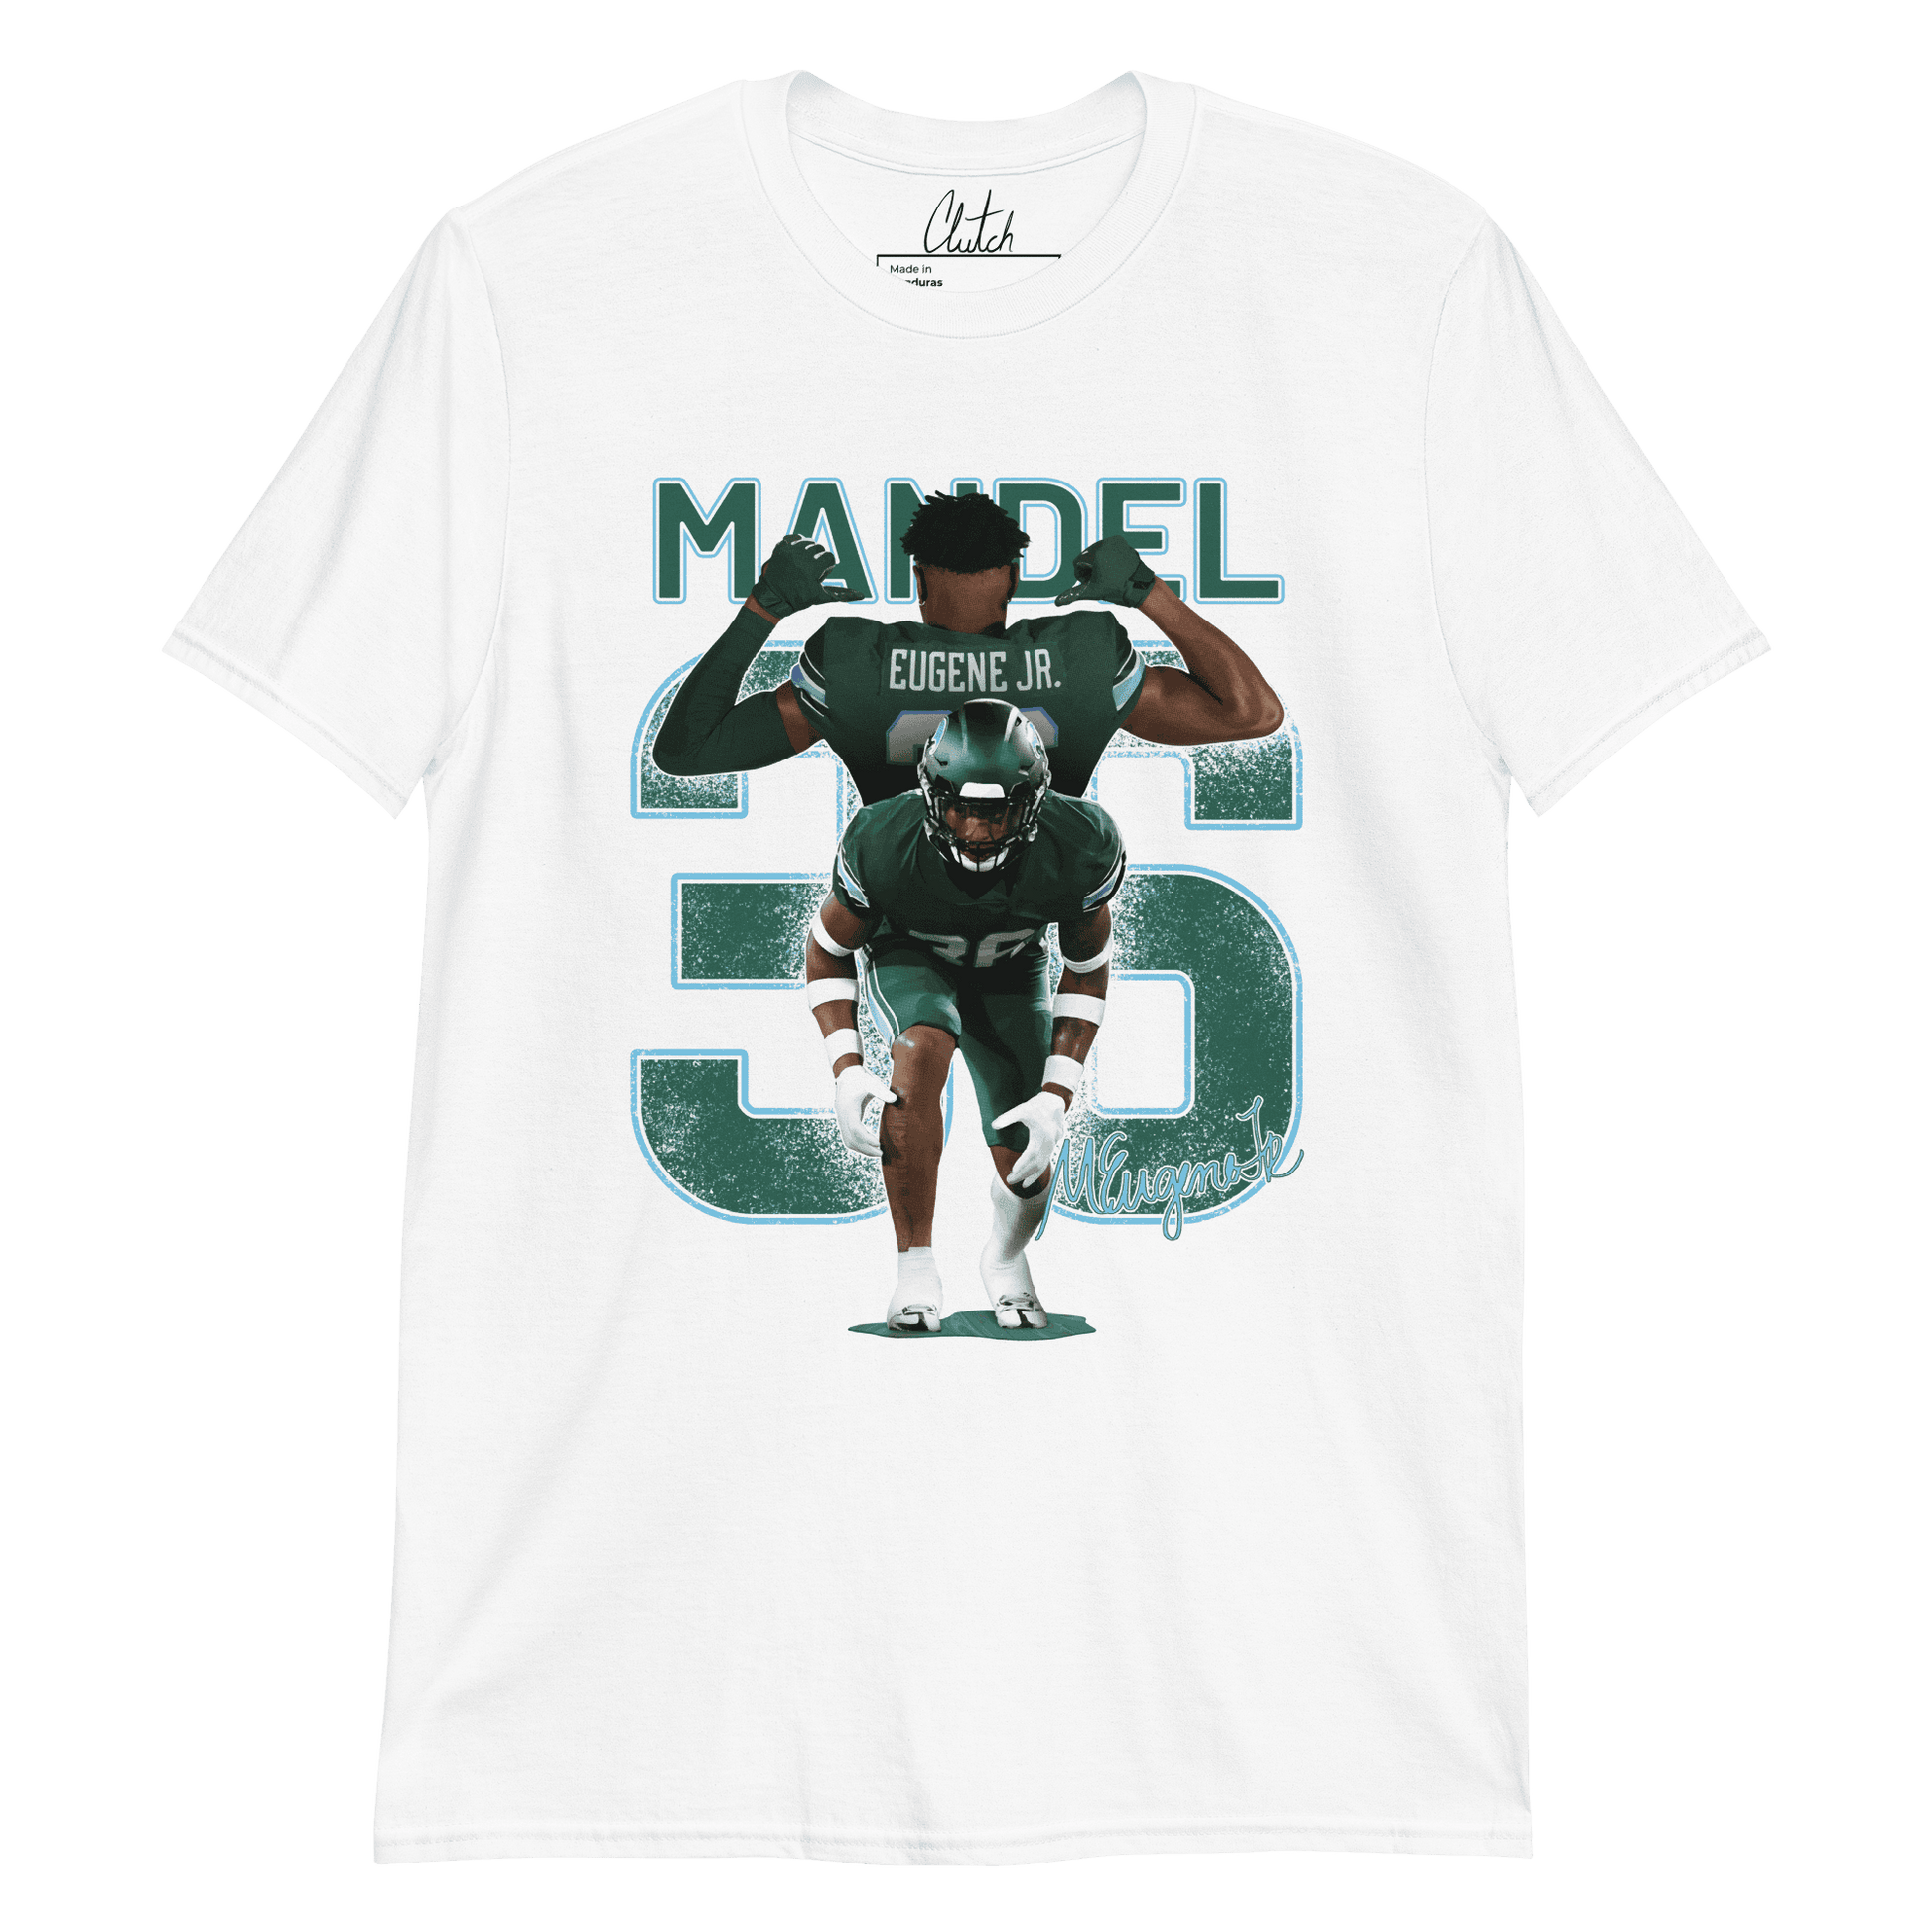 Mandel Eugene Jr | Mural Shirt - Clutch -